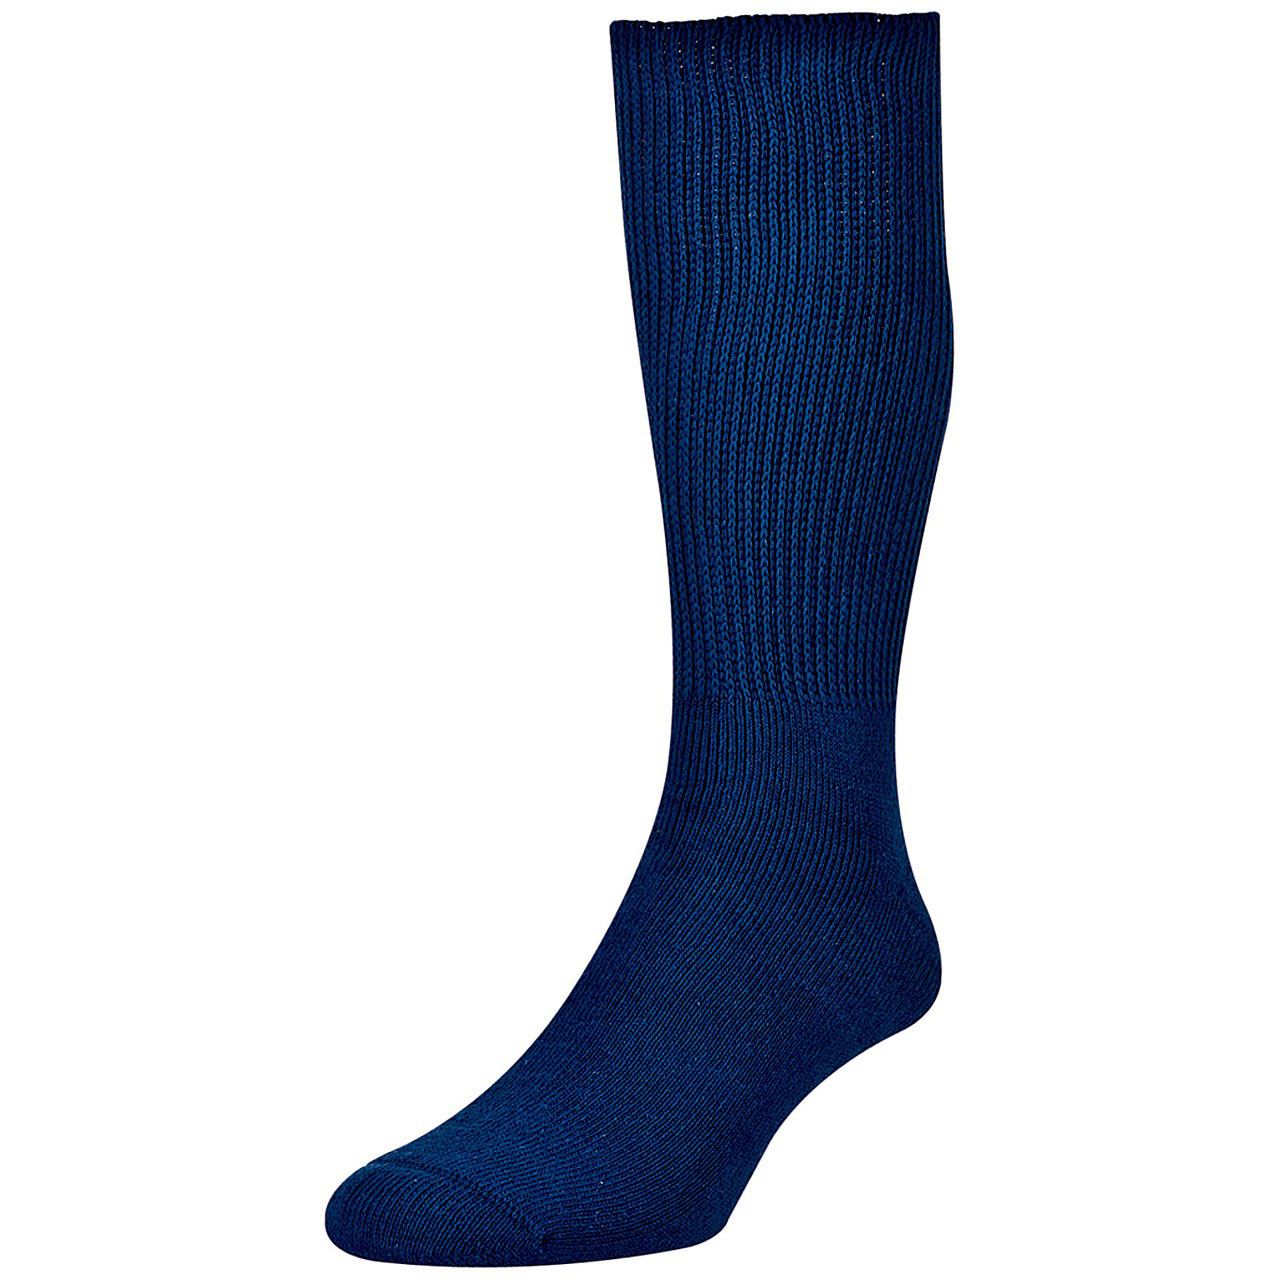 Calf Length Soft Top Diabetic Socks - Pack of 2 pairs